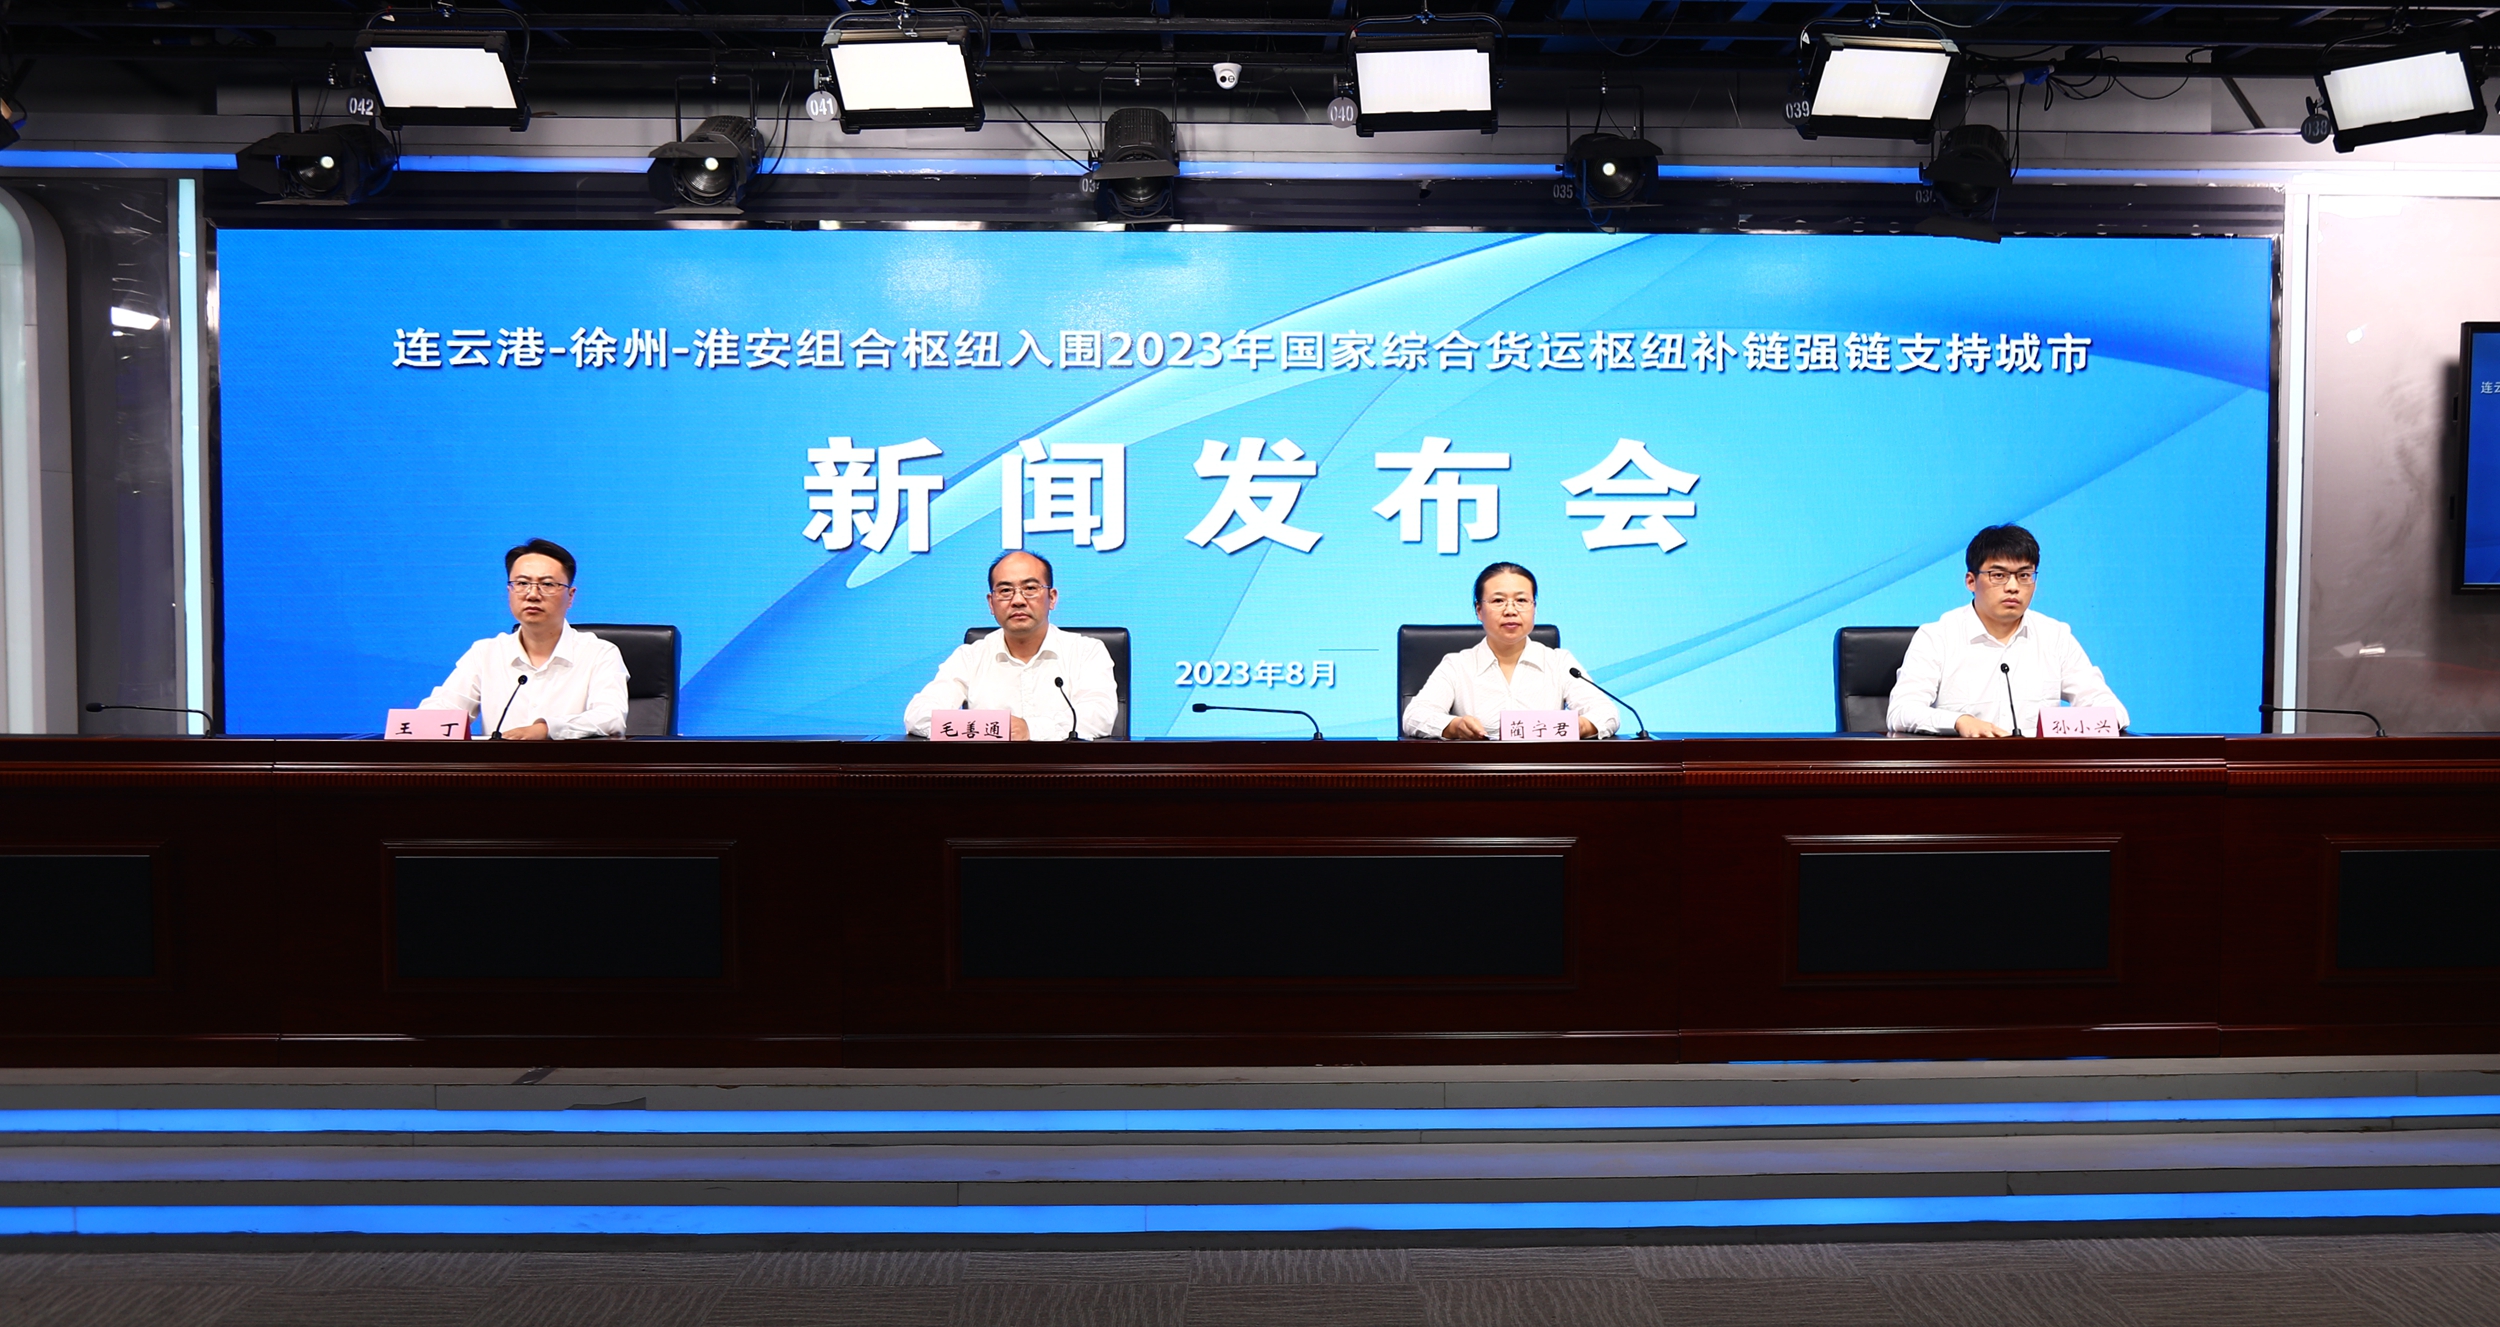 连云港-徐州-淮安组合枢纽入围2023年国家综合货运枢纽补链强链支持城市新闻发布会